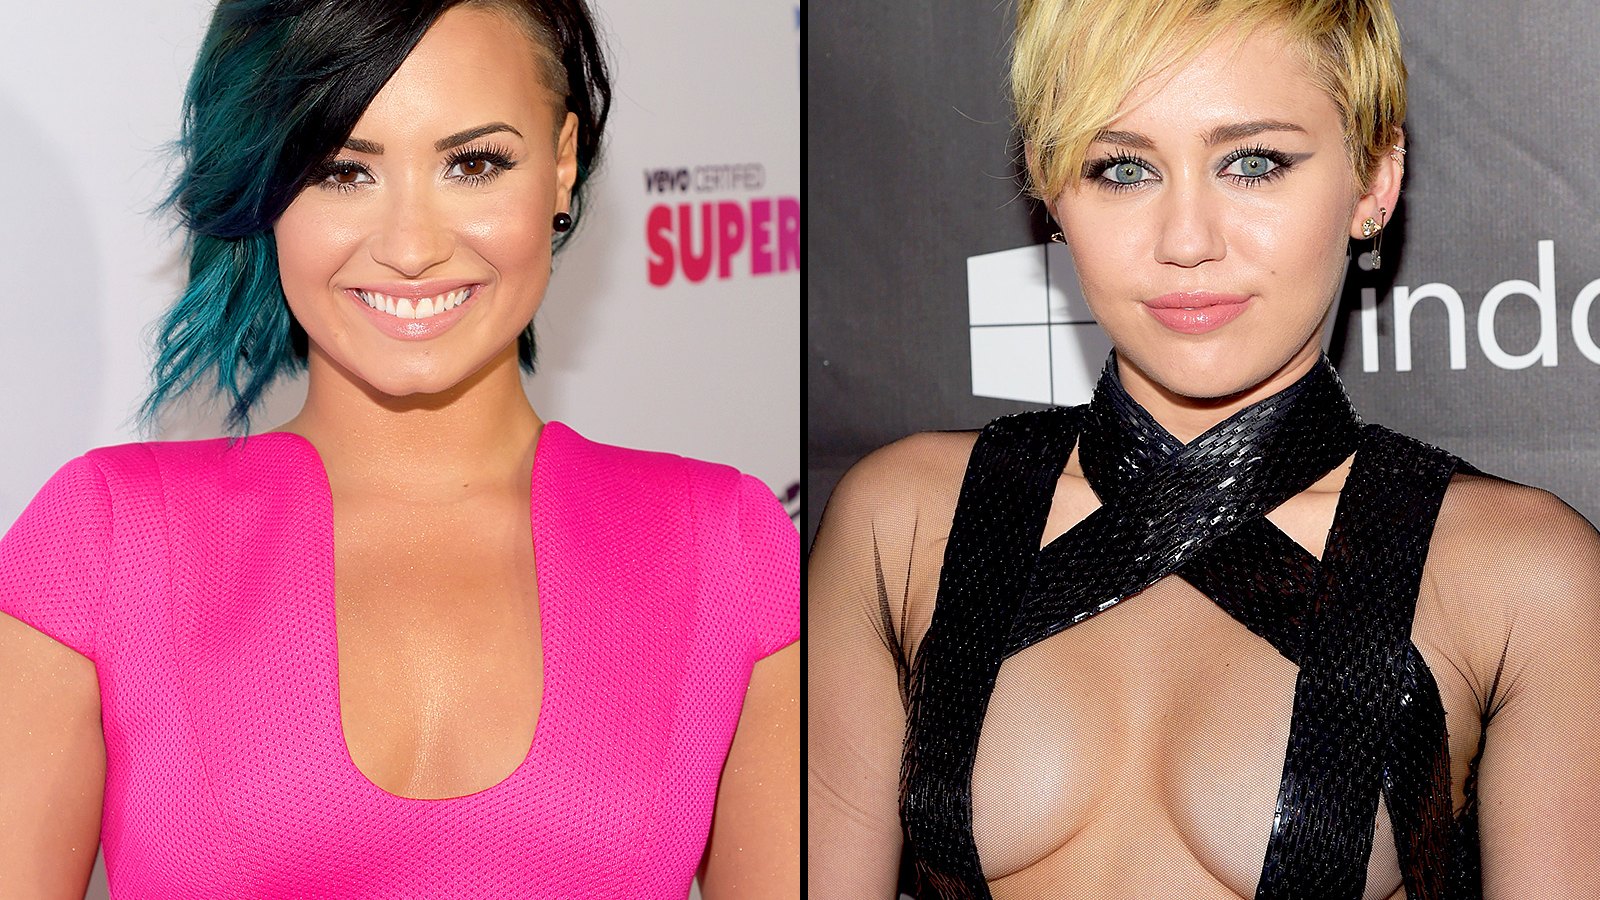 Demi Lovato and Miley Cyrus